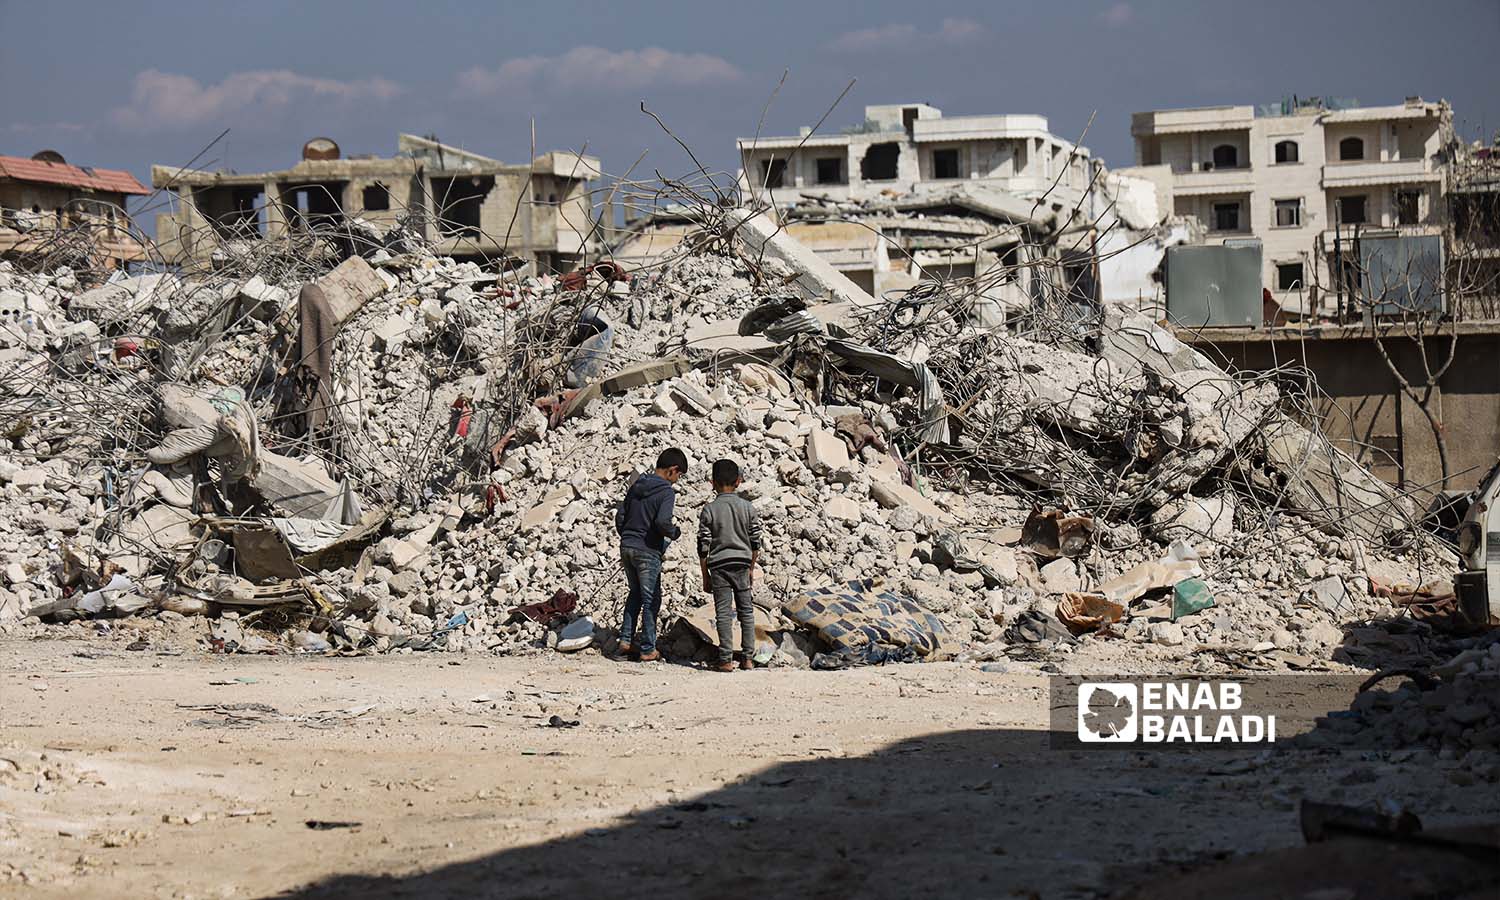 شوارع مدينة جنديرس بريف حلب بعد الزلزال الذي ضرب شمالي غربي سوريا - 24شباط 2023 (عنب بلدي/ أمير خربطلي)